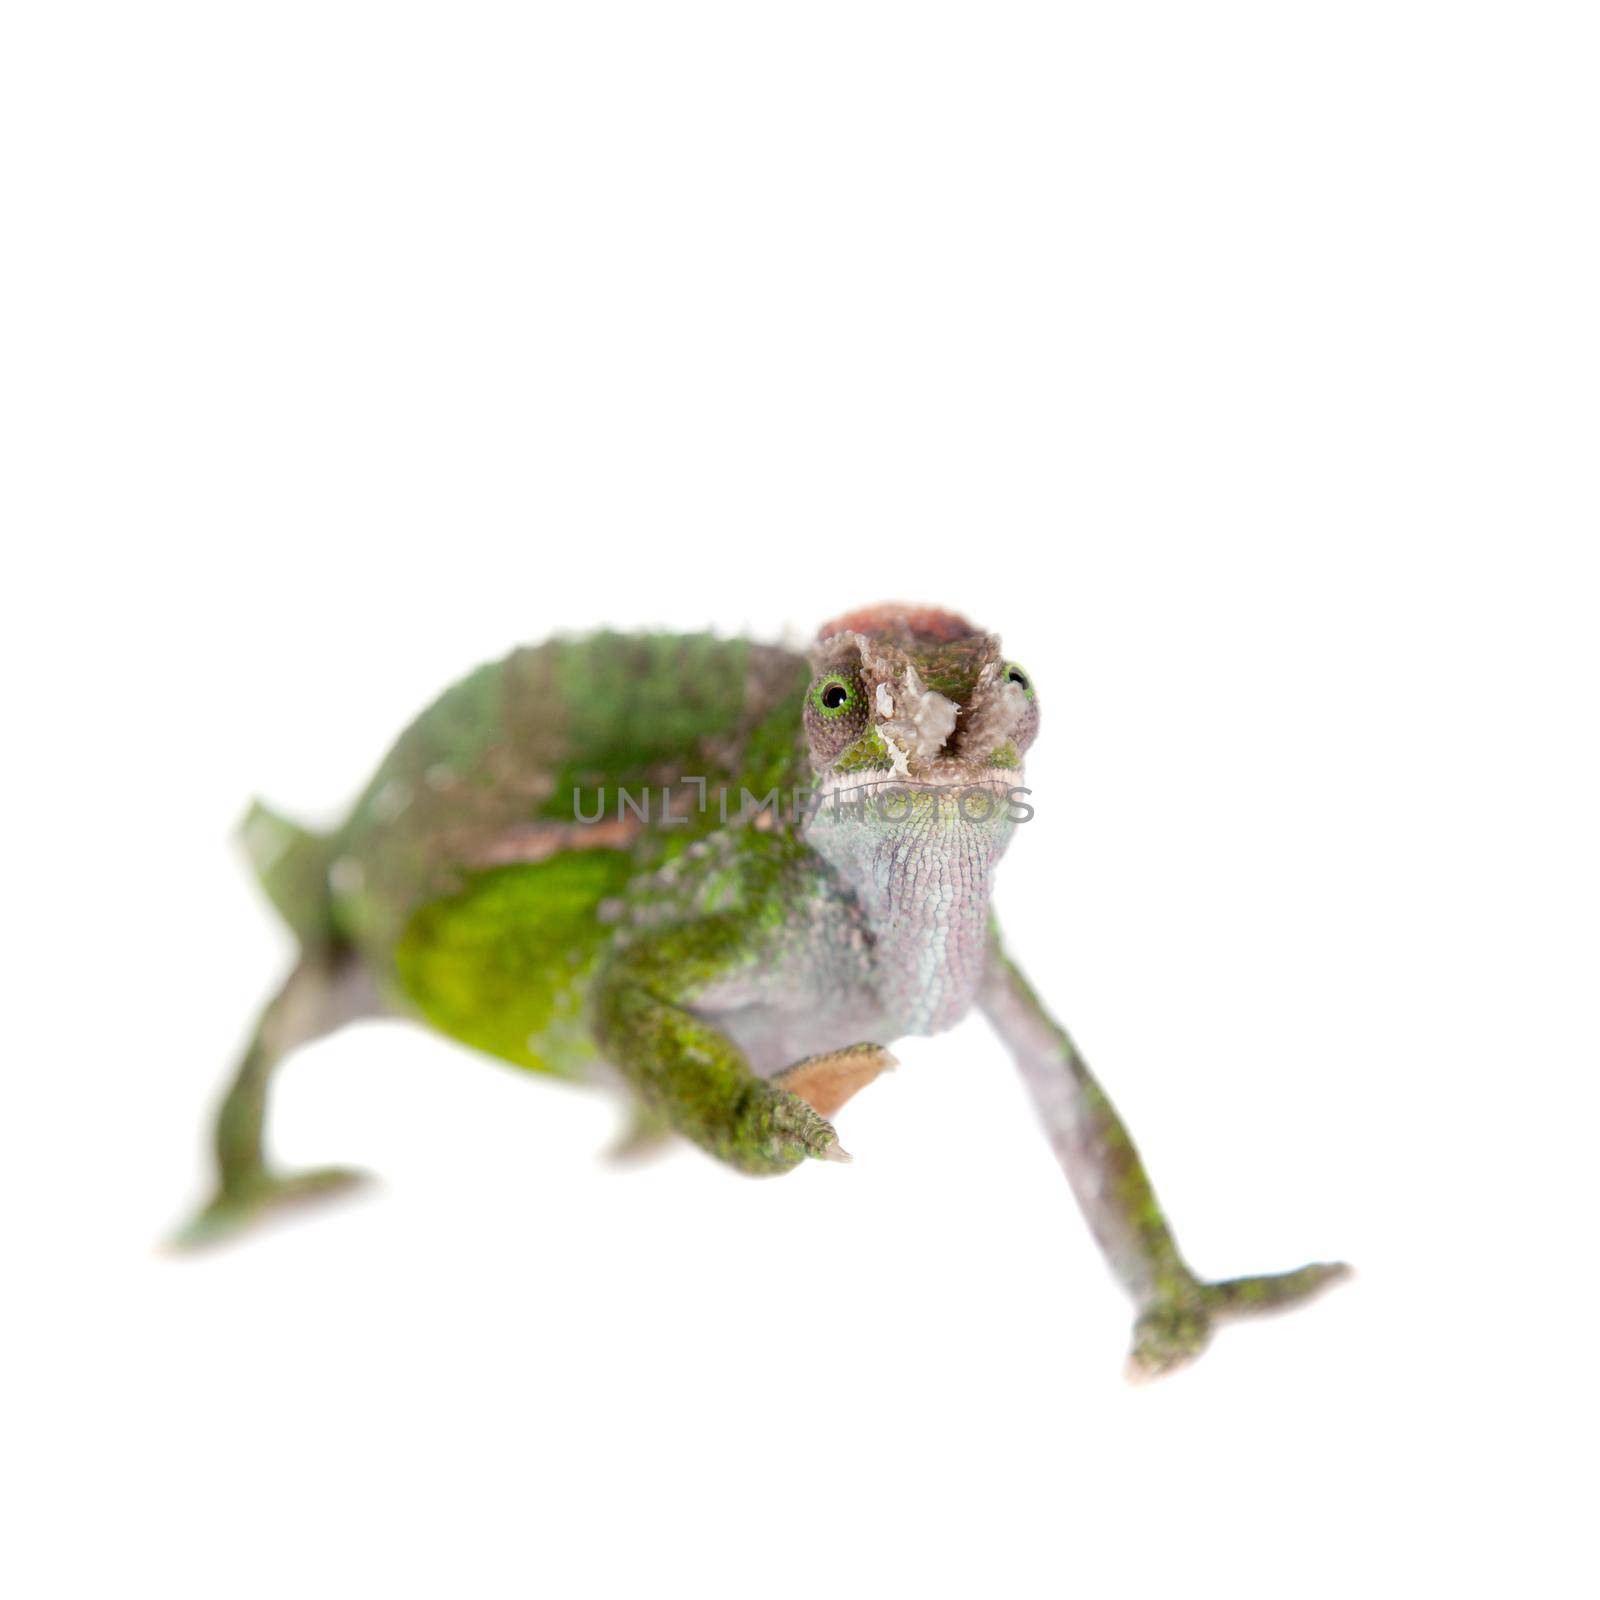 Fischer's chameleon, Kinyongia fischeri on white by RosaJay